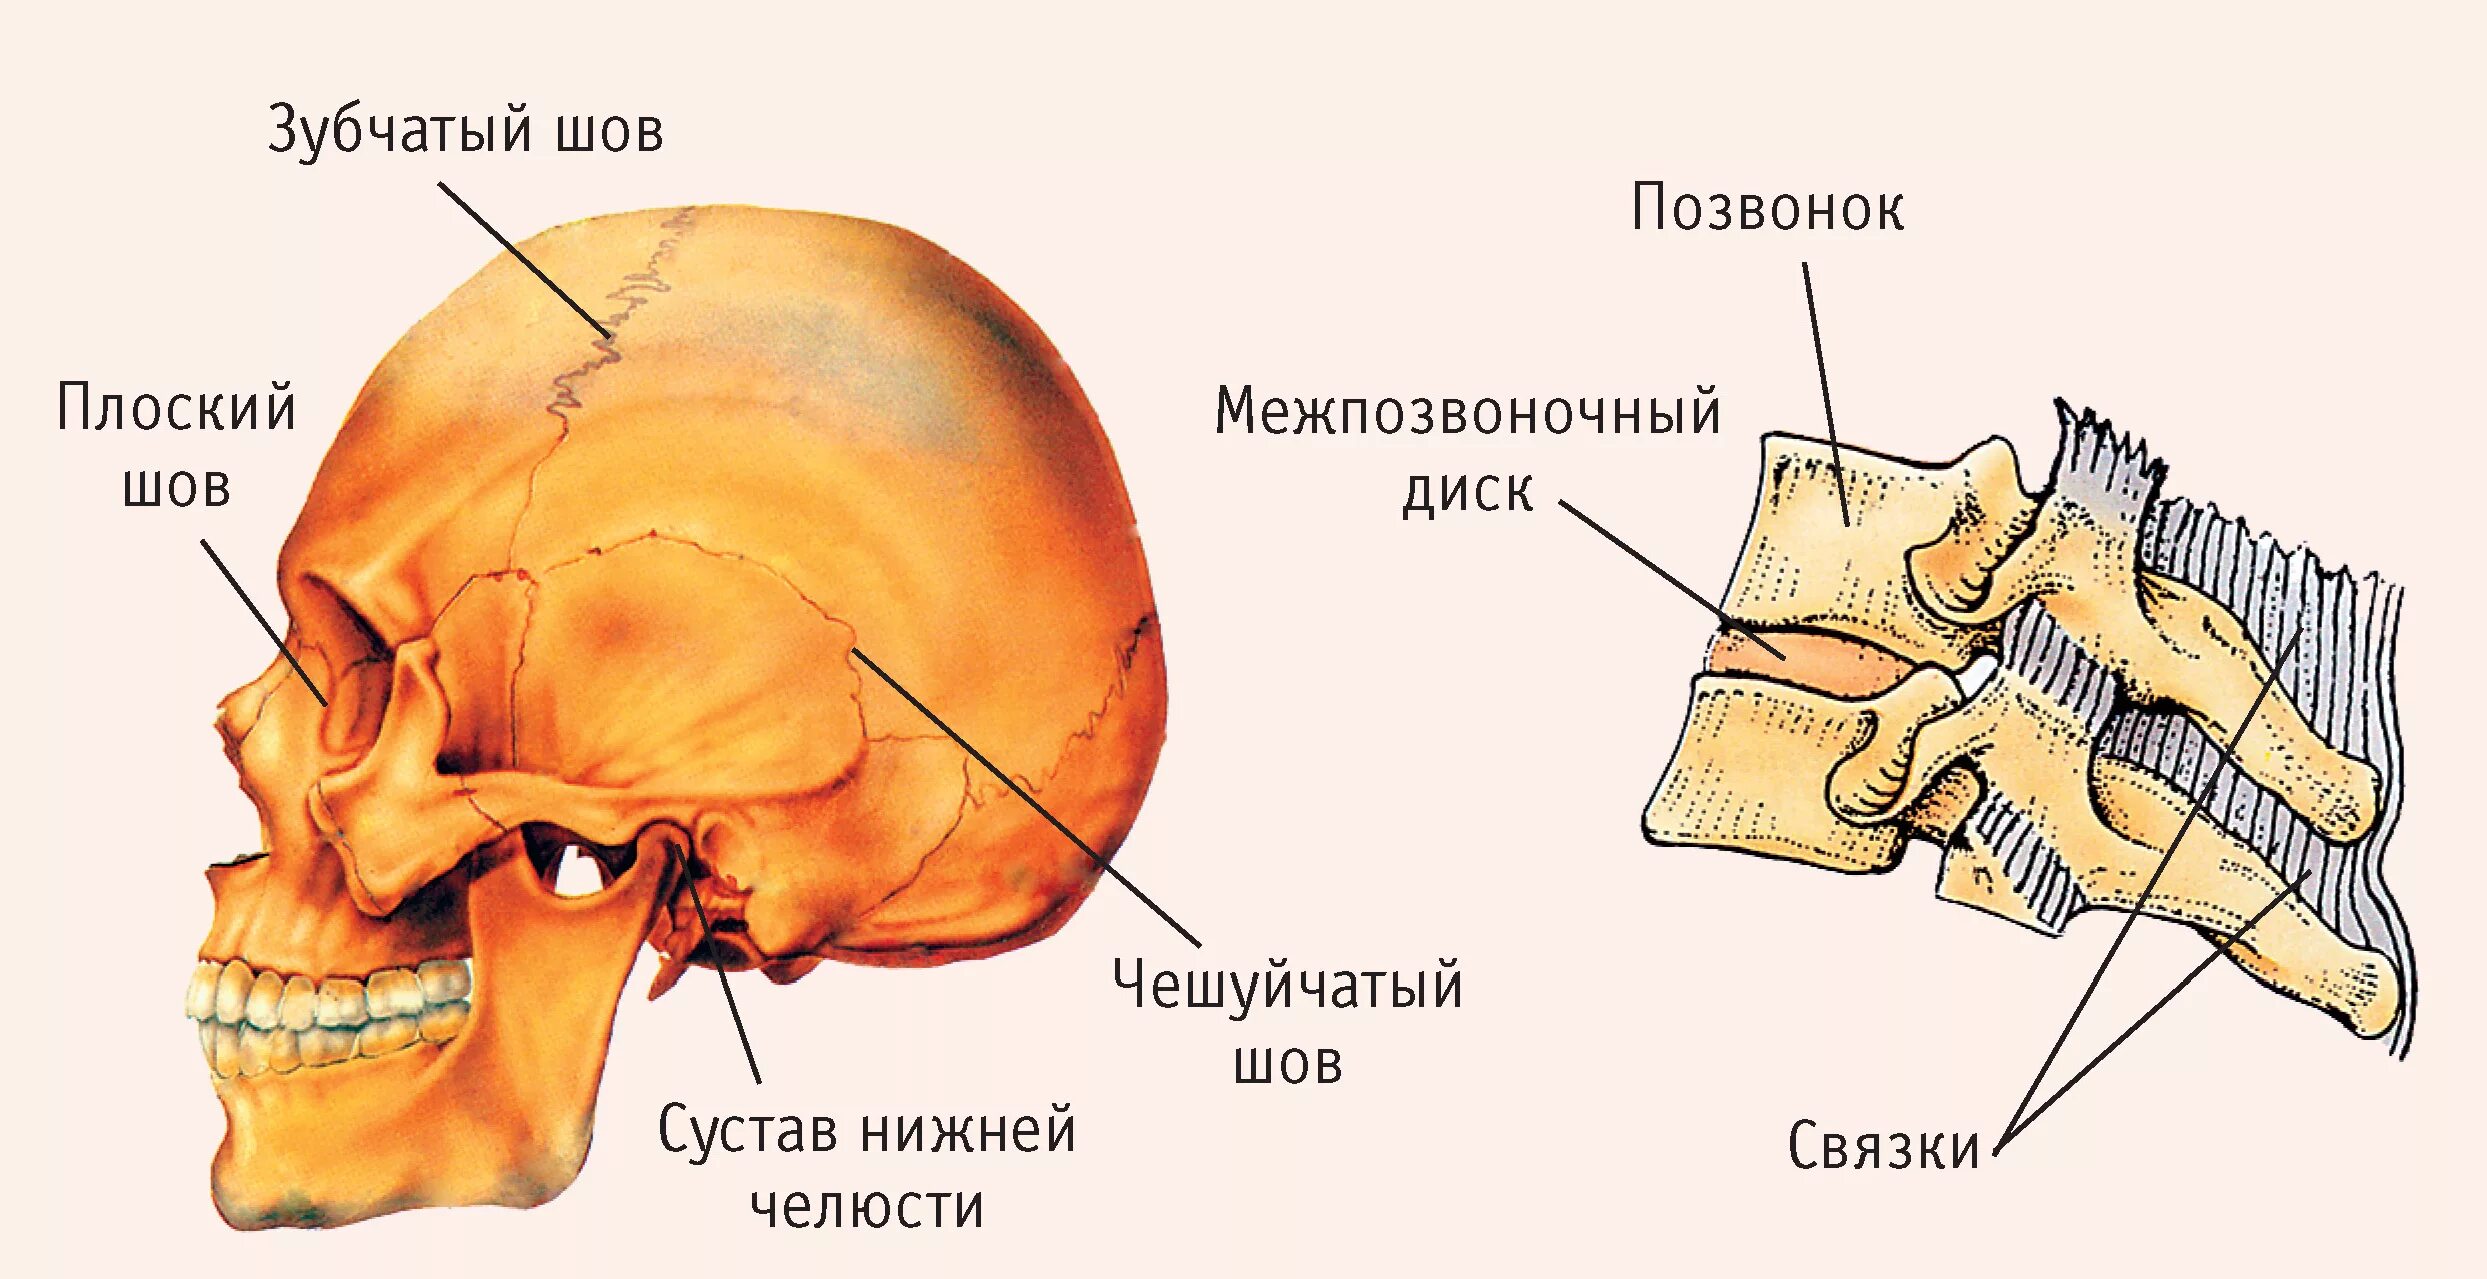 Теменная и височная кости тип соединения. Чешуйчатый шов черепа анатомия. Швы черепа анатомия зубчатый. Строение кости швы черепа. Соединения костей черепа анатомия швы.